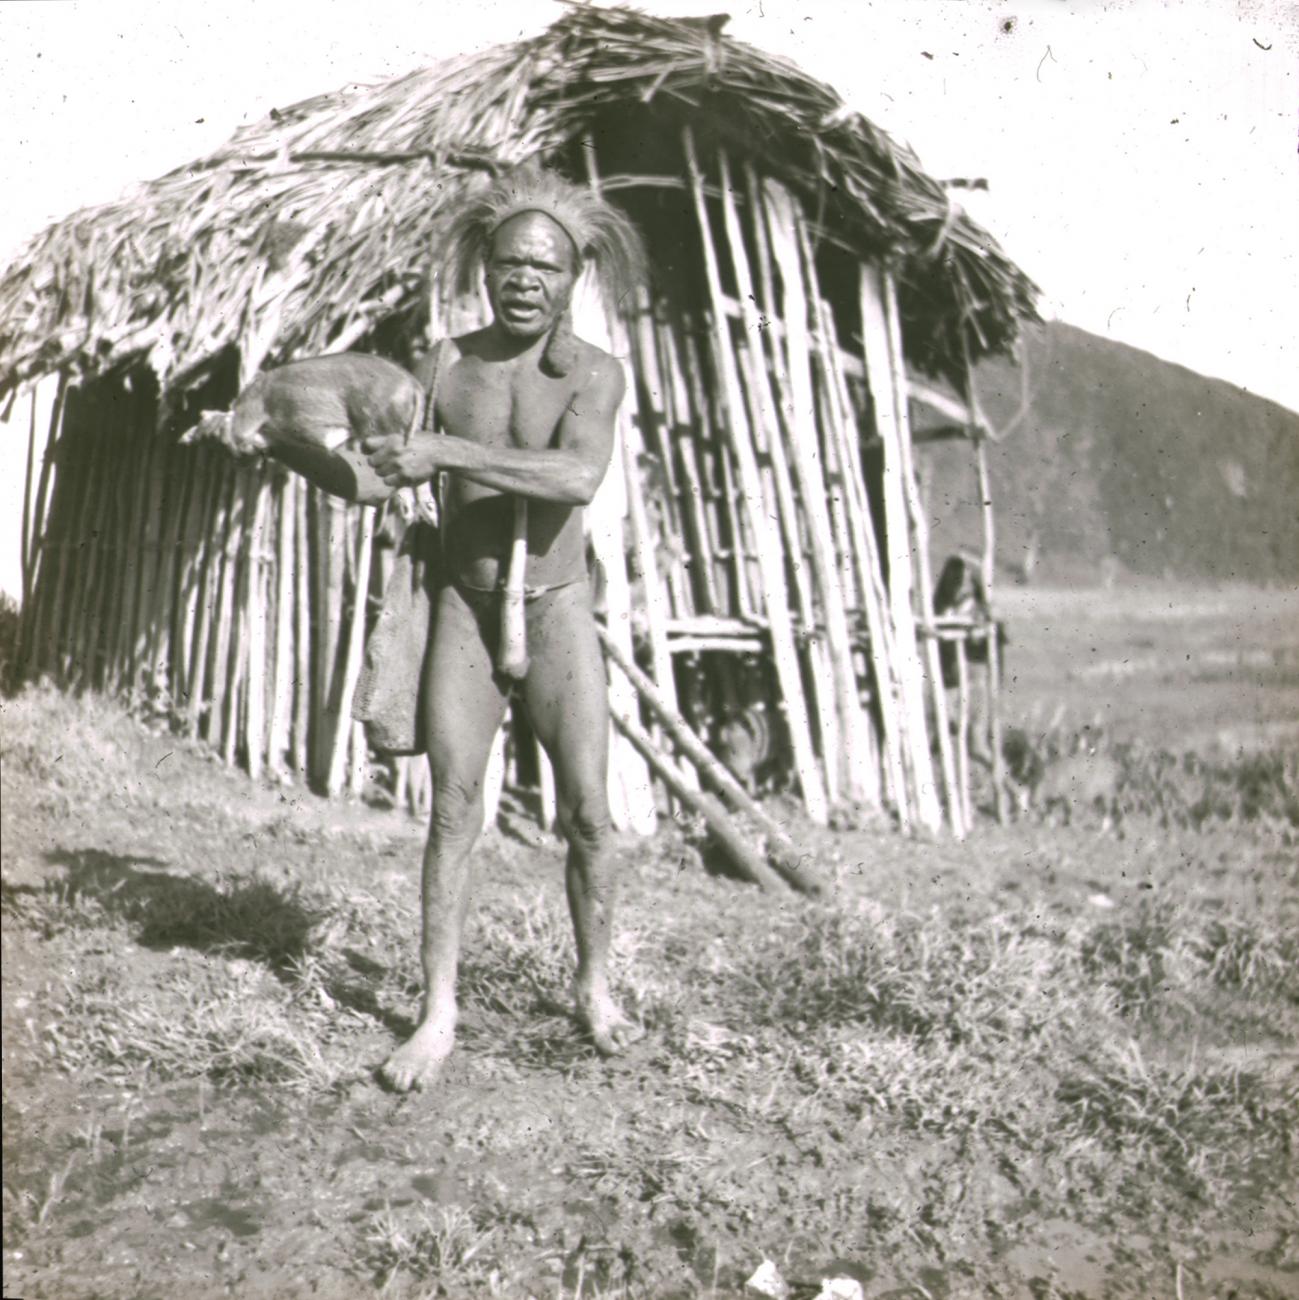 BD/329/44 - 
Papoea-man poseert voor een hut met een varkentje in zijn hand
